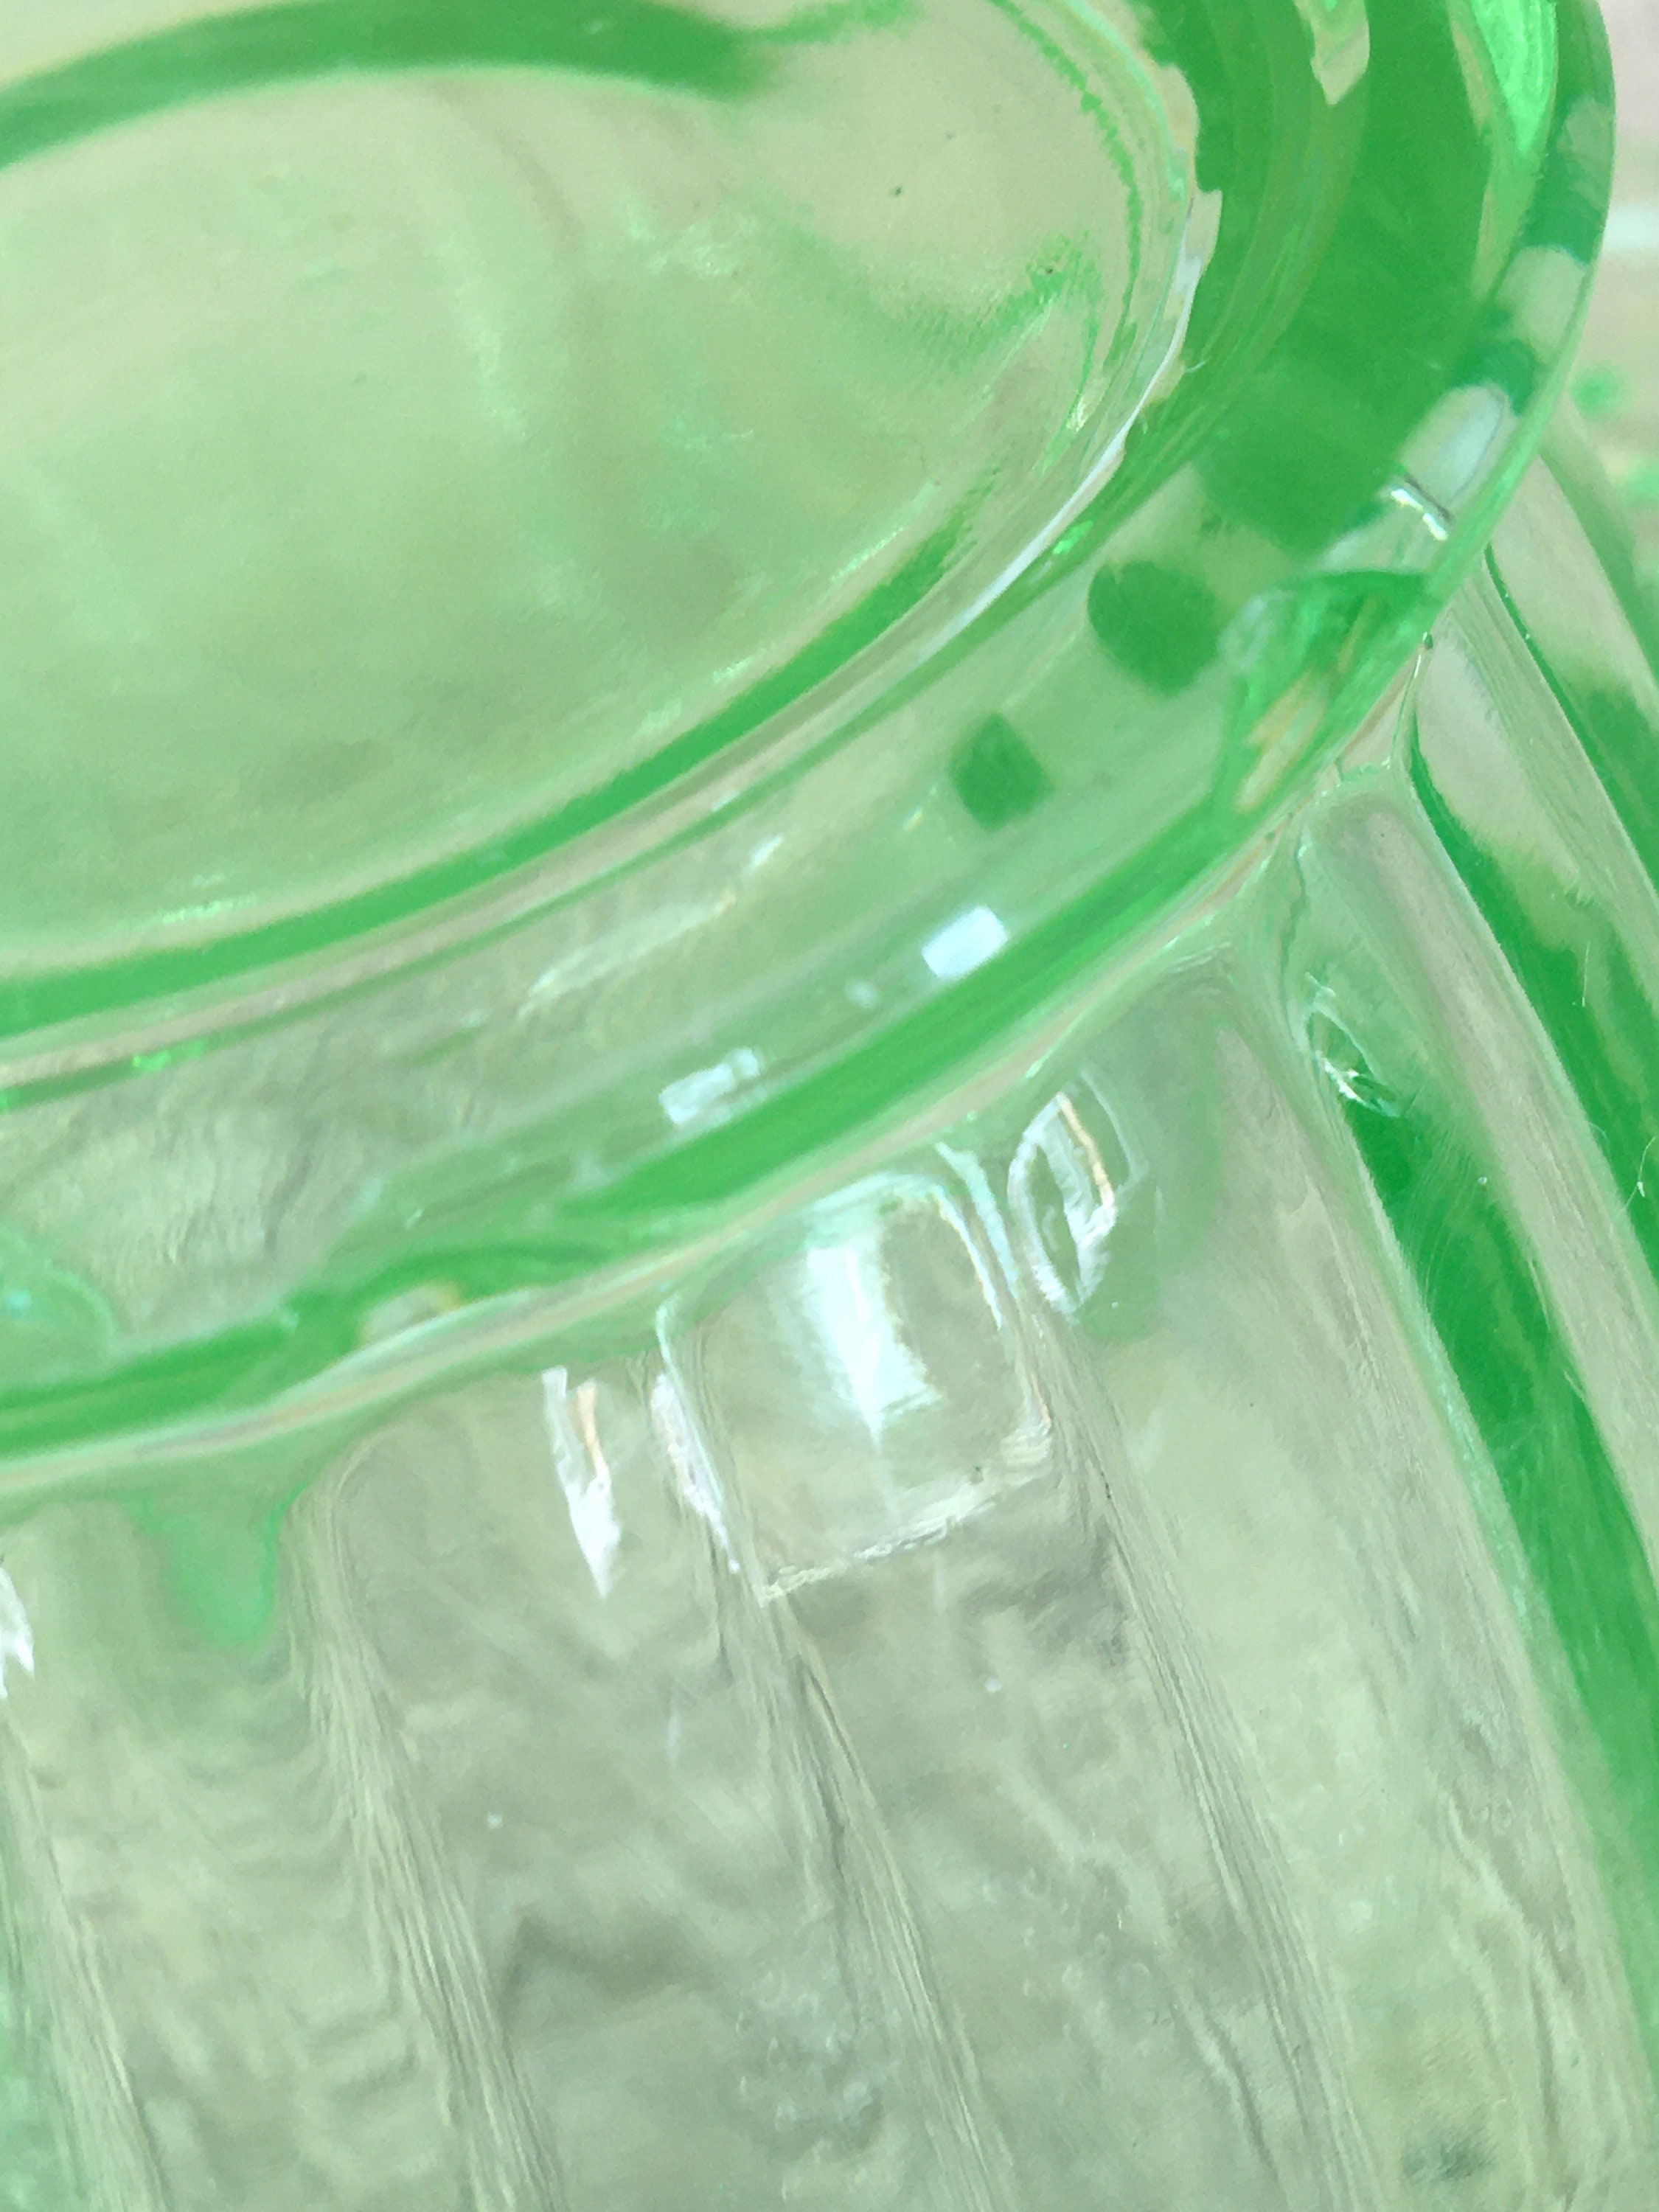 Uranium Glass Hobnail Posy Vase Jobling Art Deco Green Glass Etsy